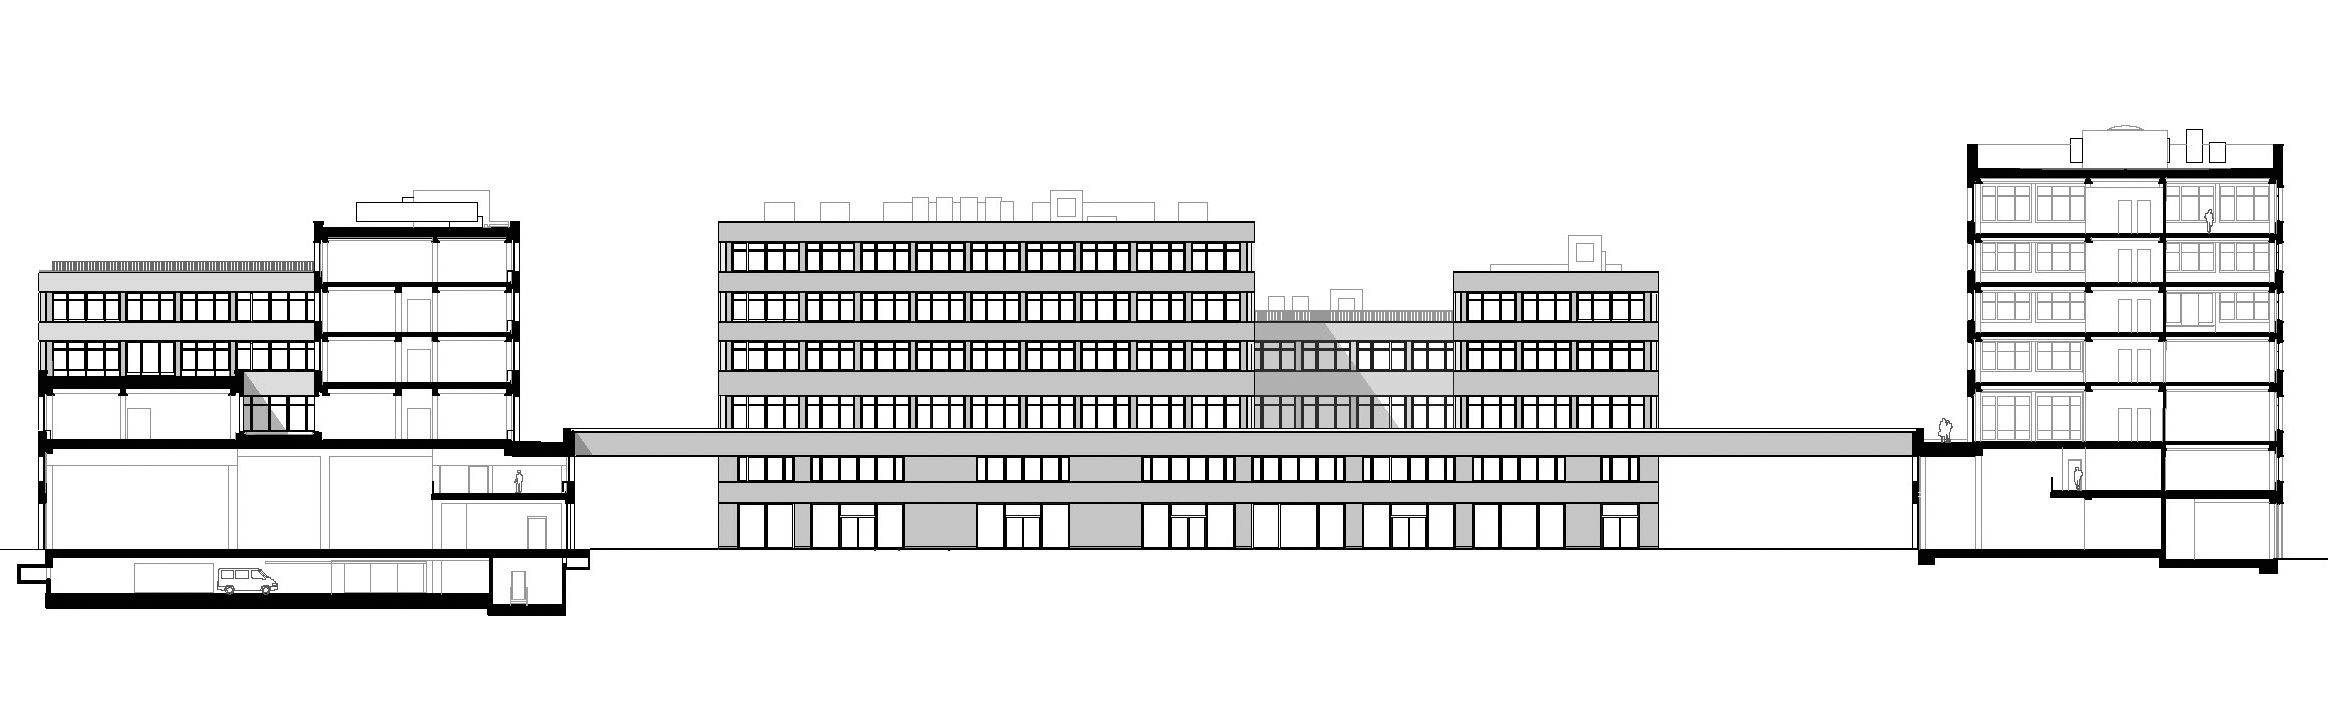 Büro und Industrie Campus "Berlin Decks" - Längsschnitt